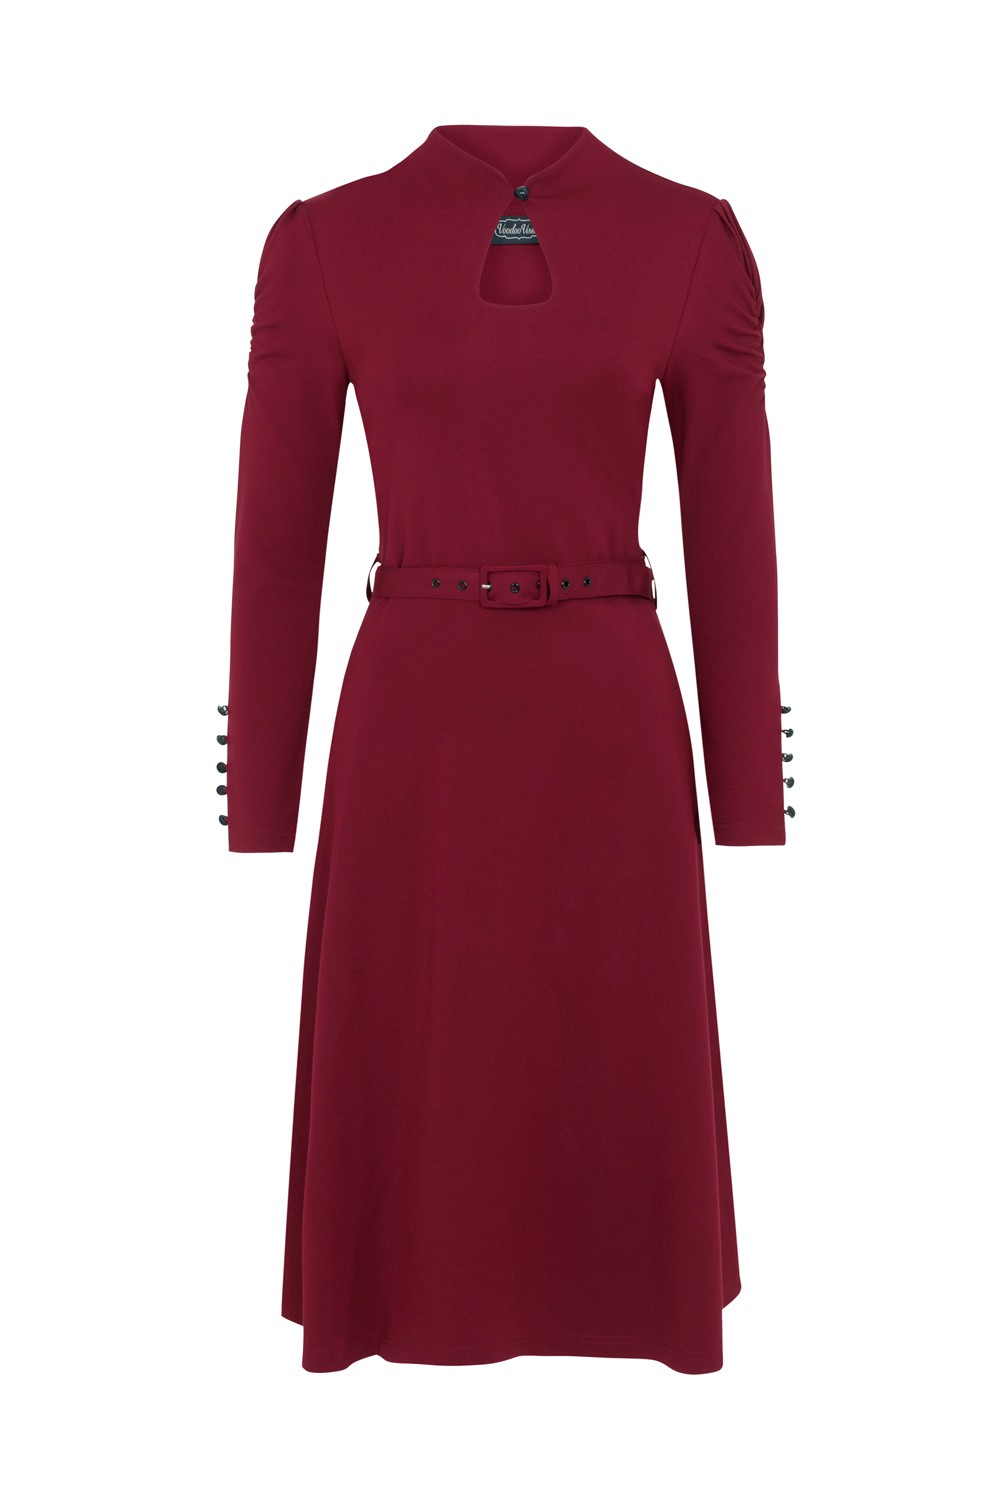 Vixen Burgundy Red Dita 1950s Swing Dress | Free UK P&P | PDUK